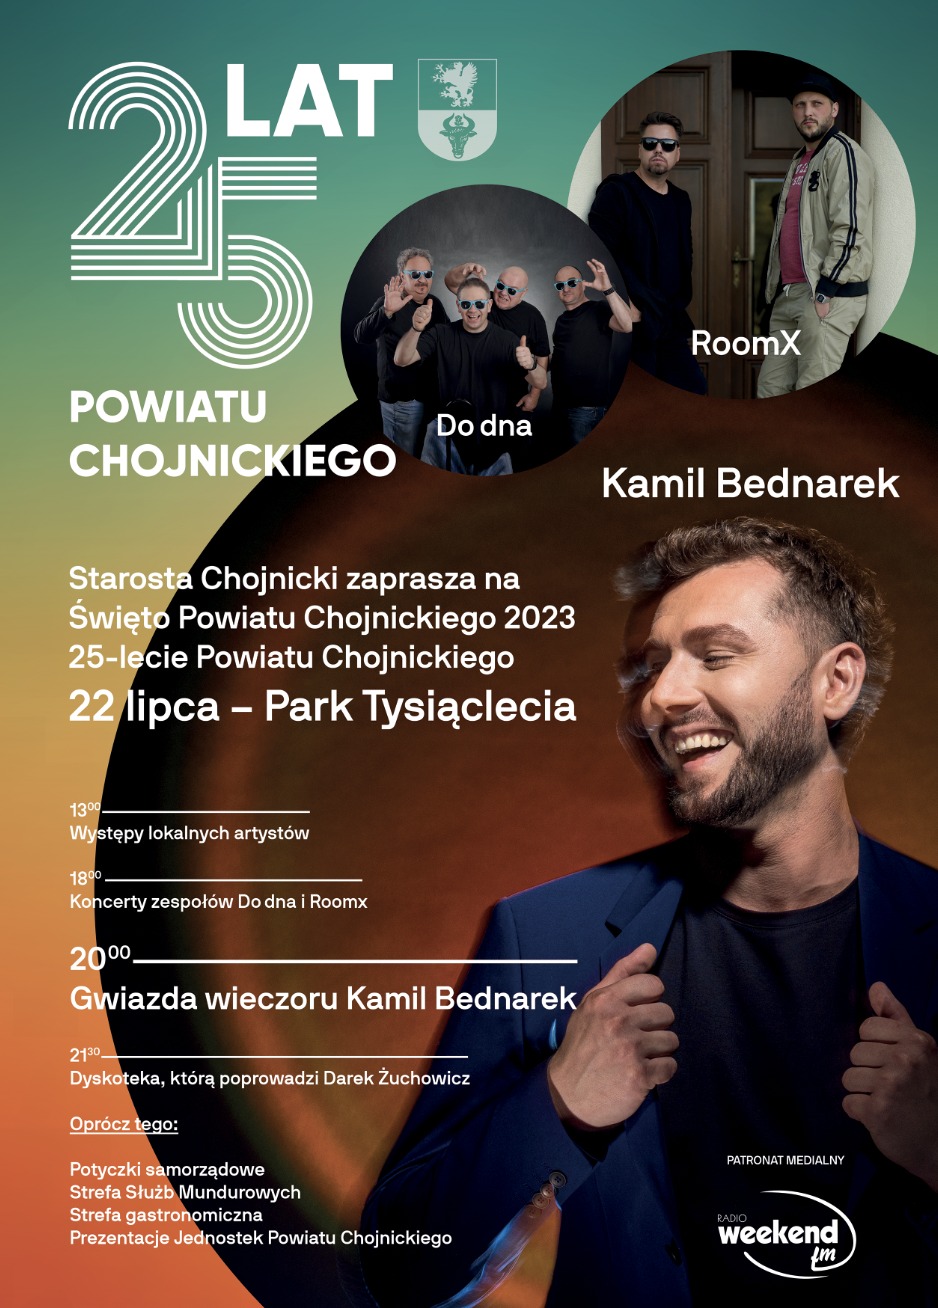 Plakat zawiera plan obchodów 25-lecia Powiatu Chojnickiego